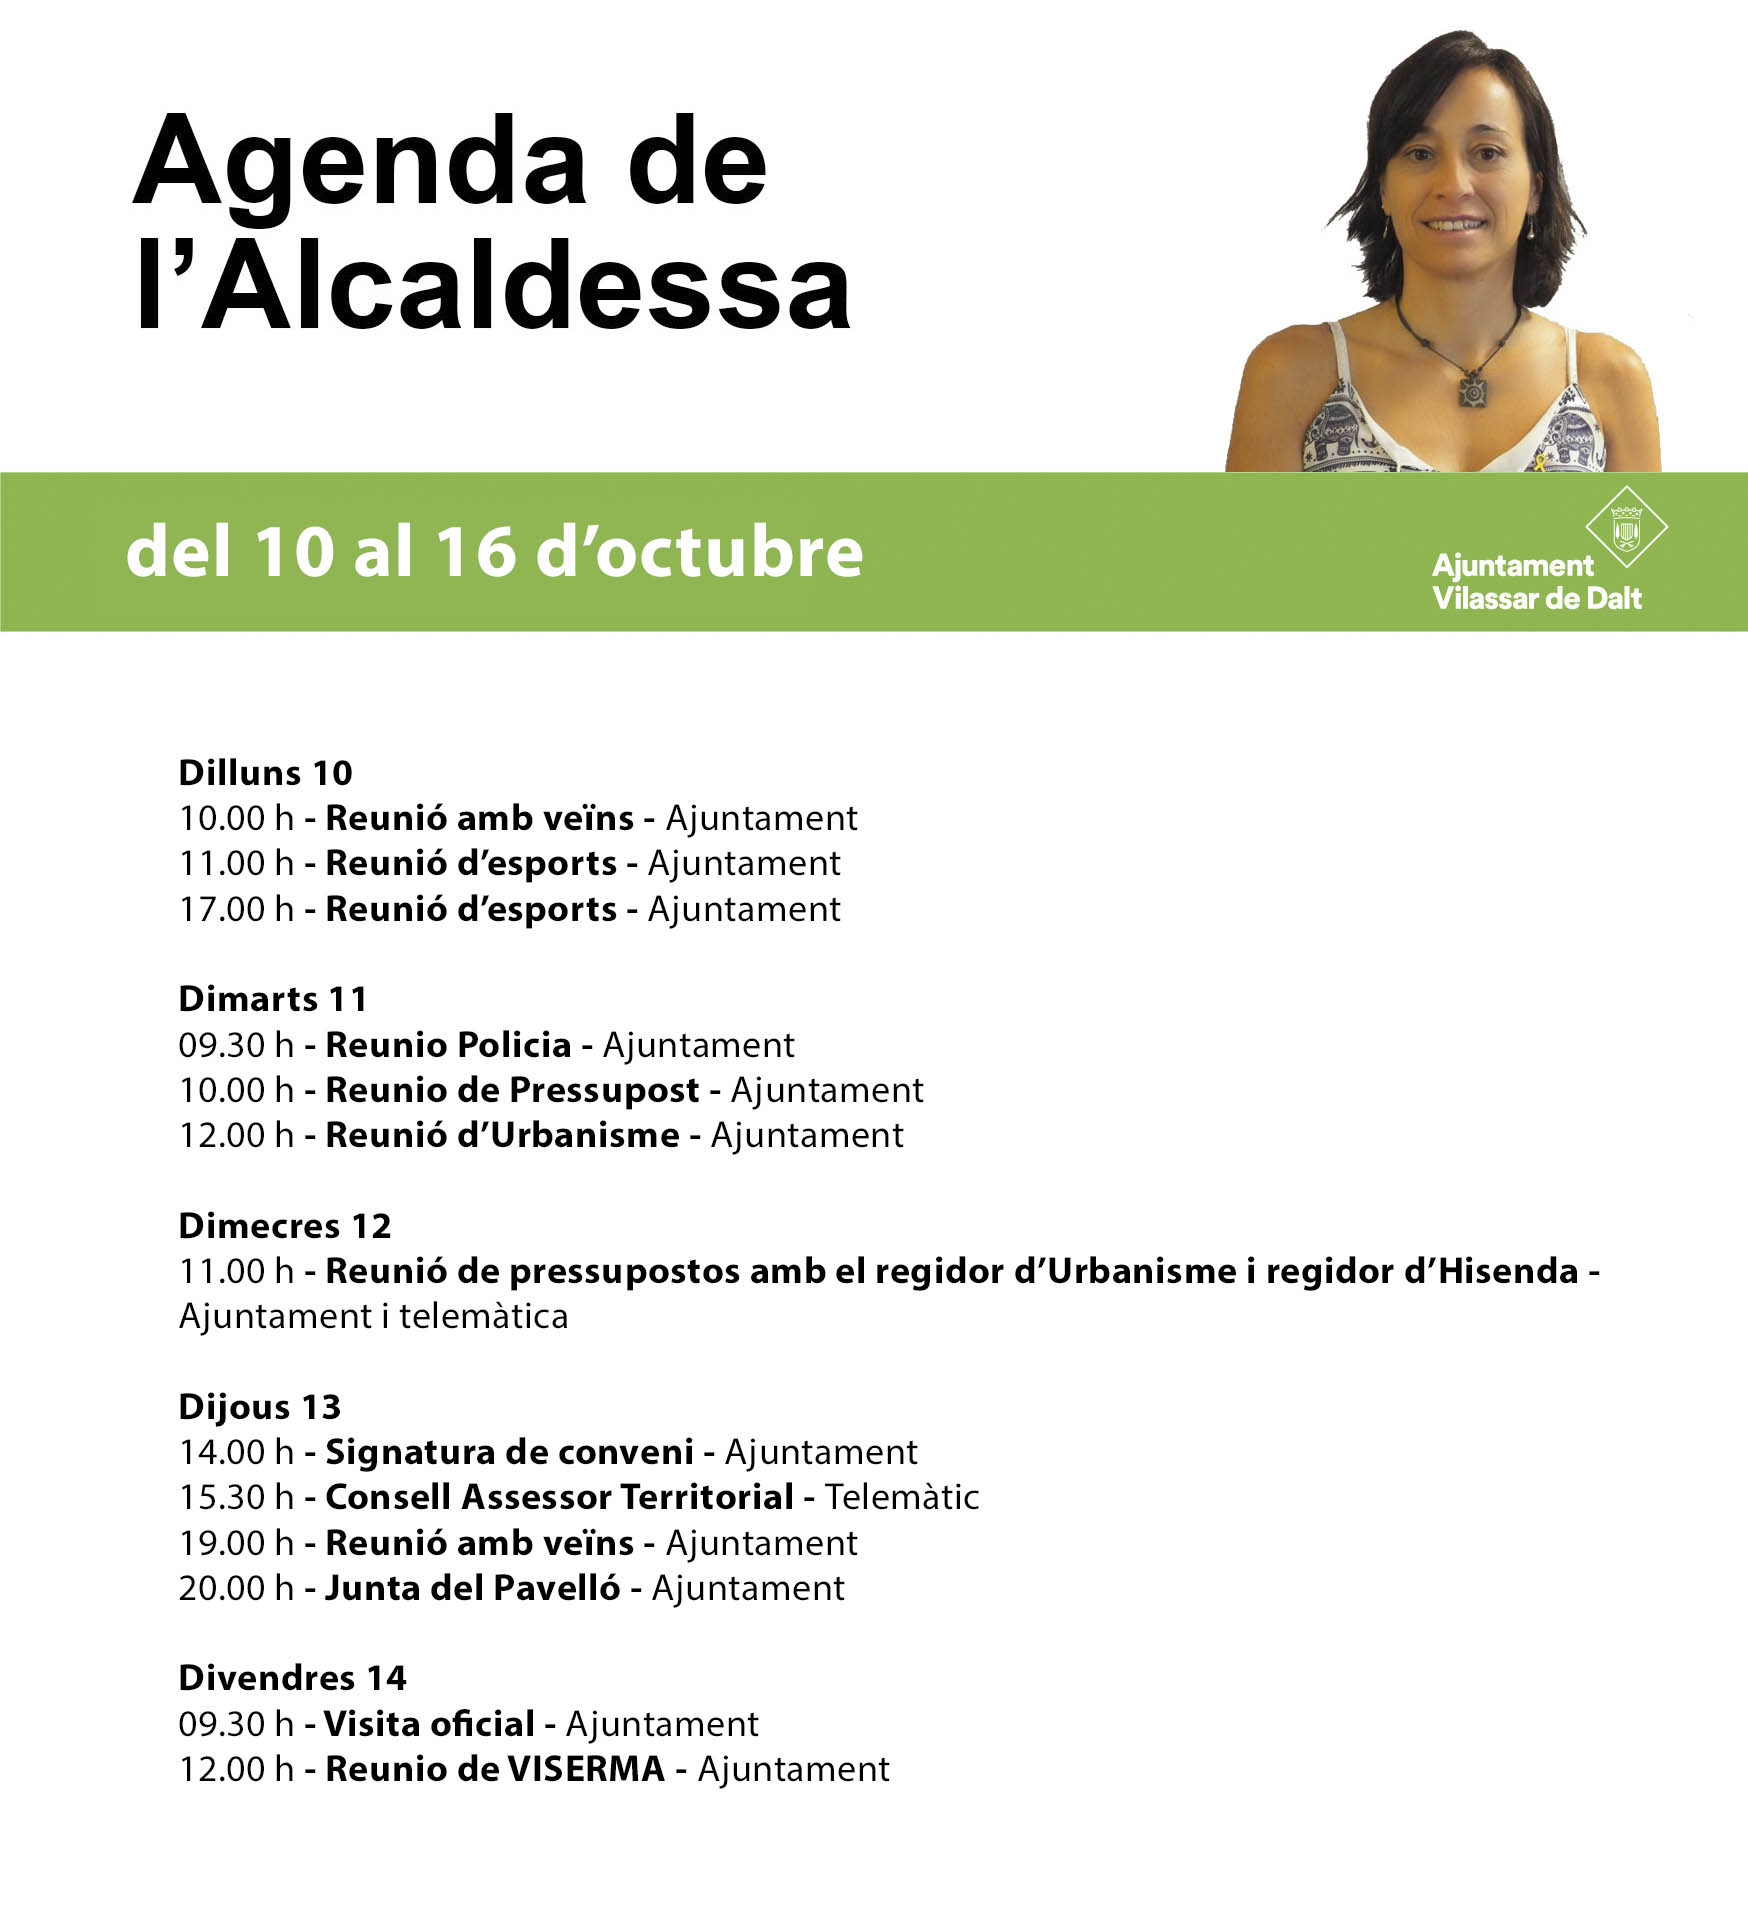 Agenda de l'alcaldessa. Del 10 al 16 d'octubre